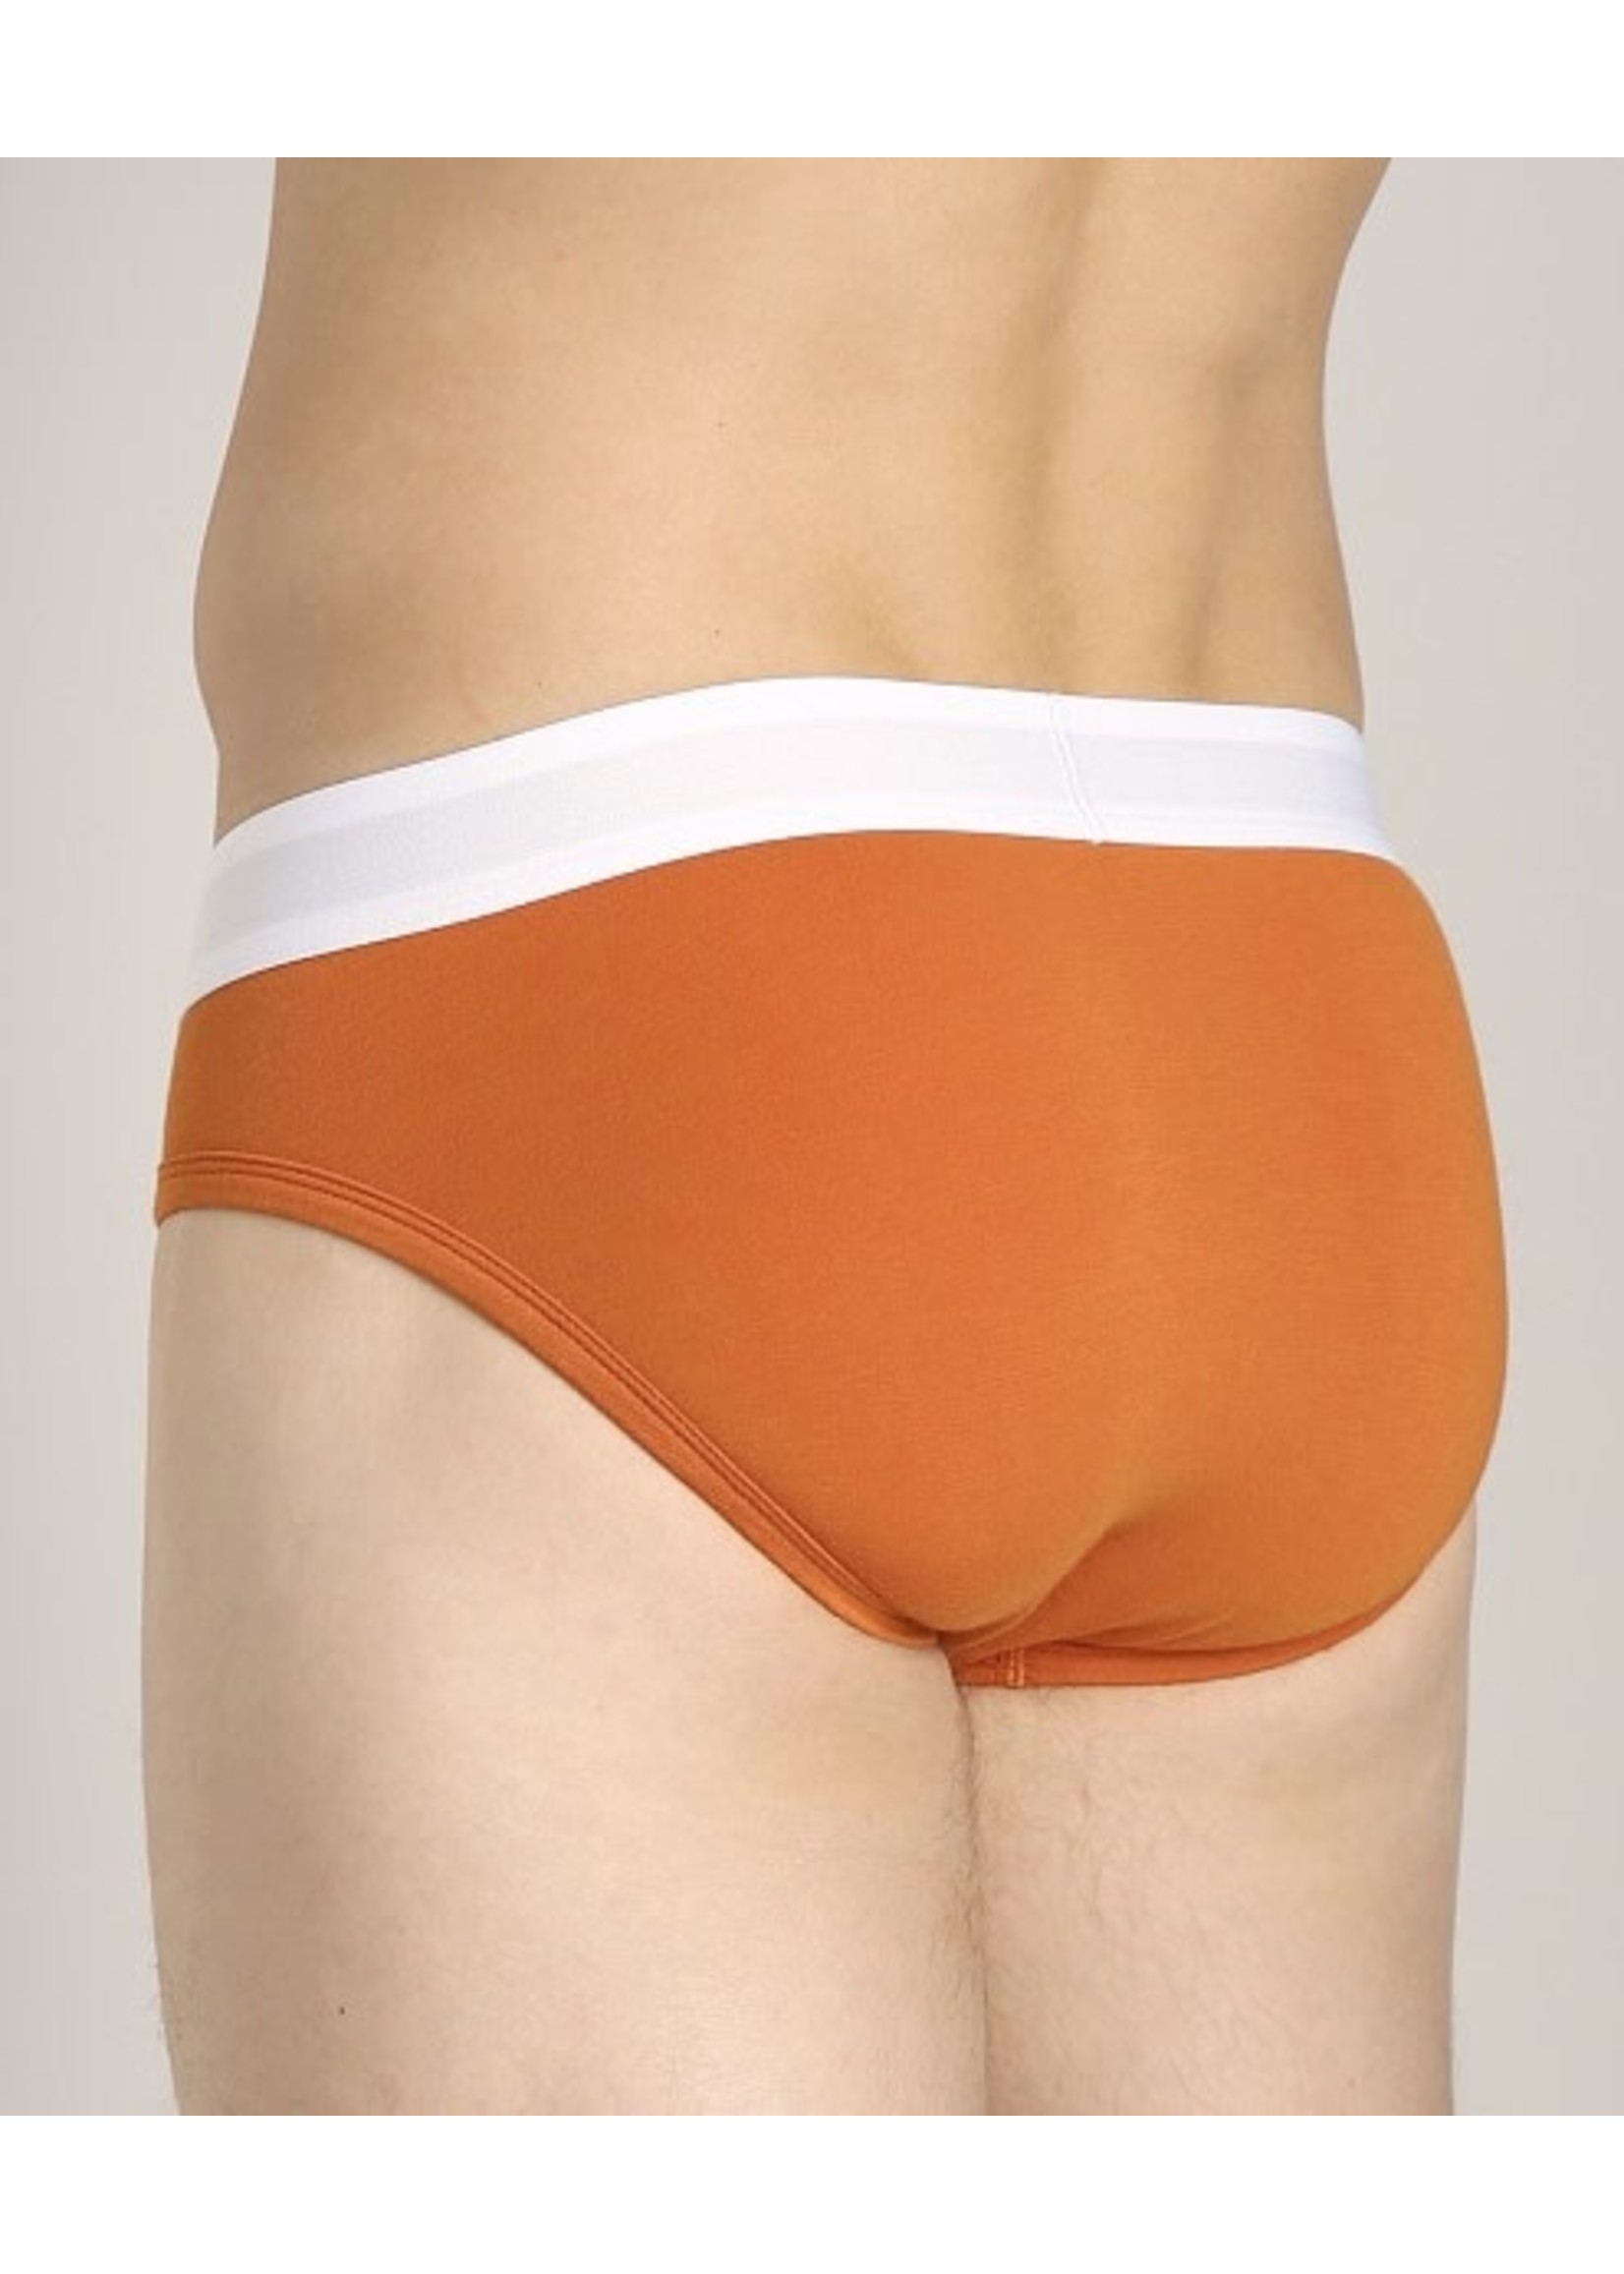 Wood Underwear Hip Brief in Wood Orange